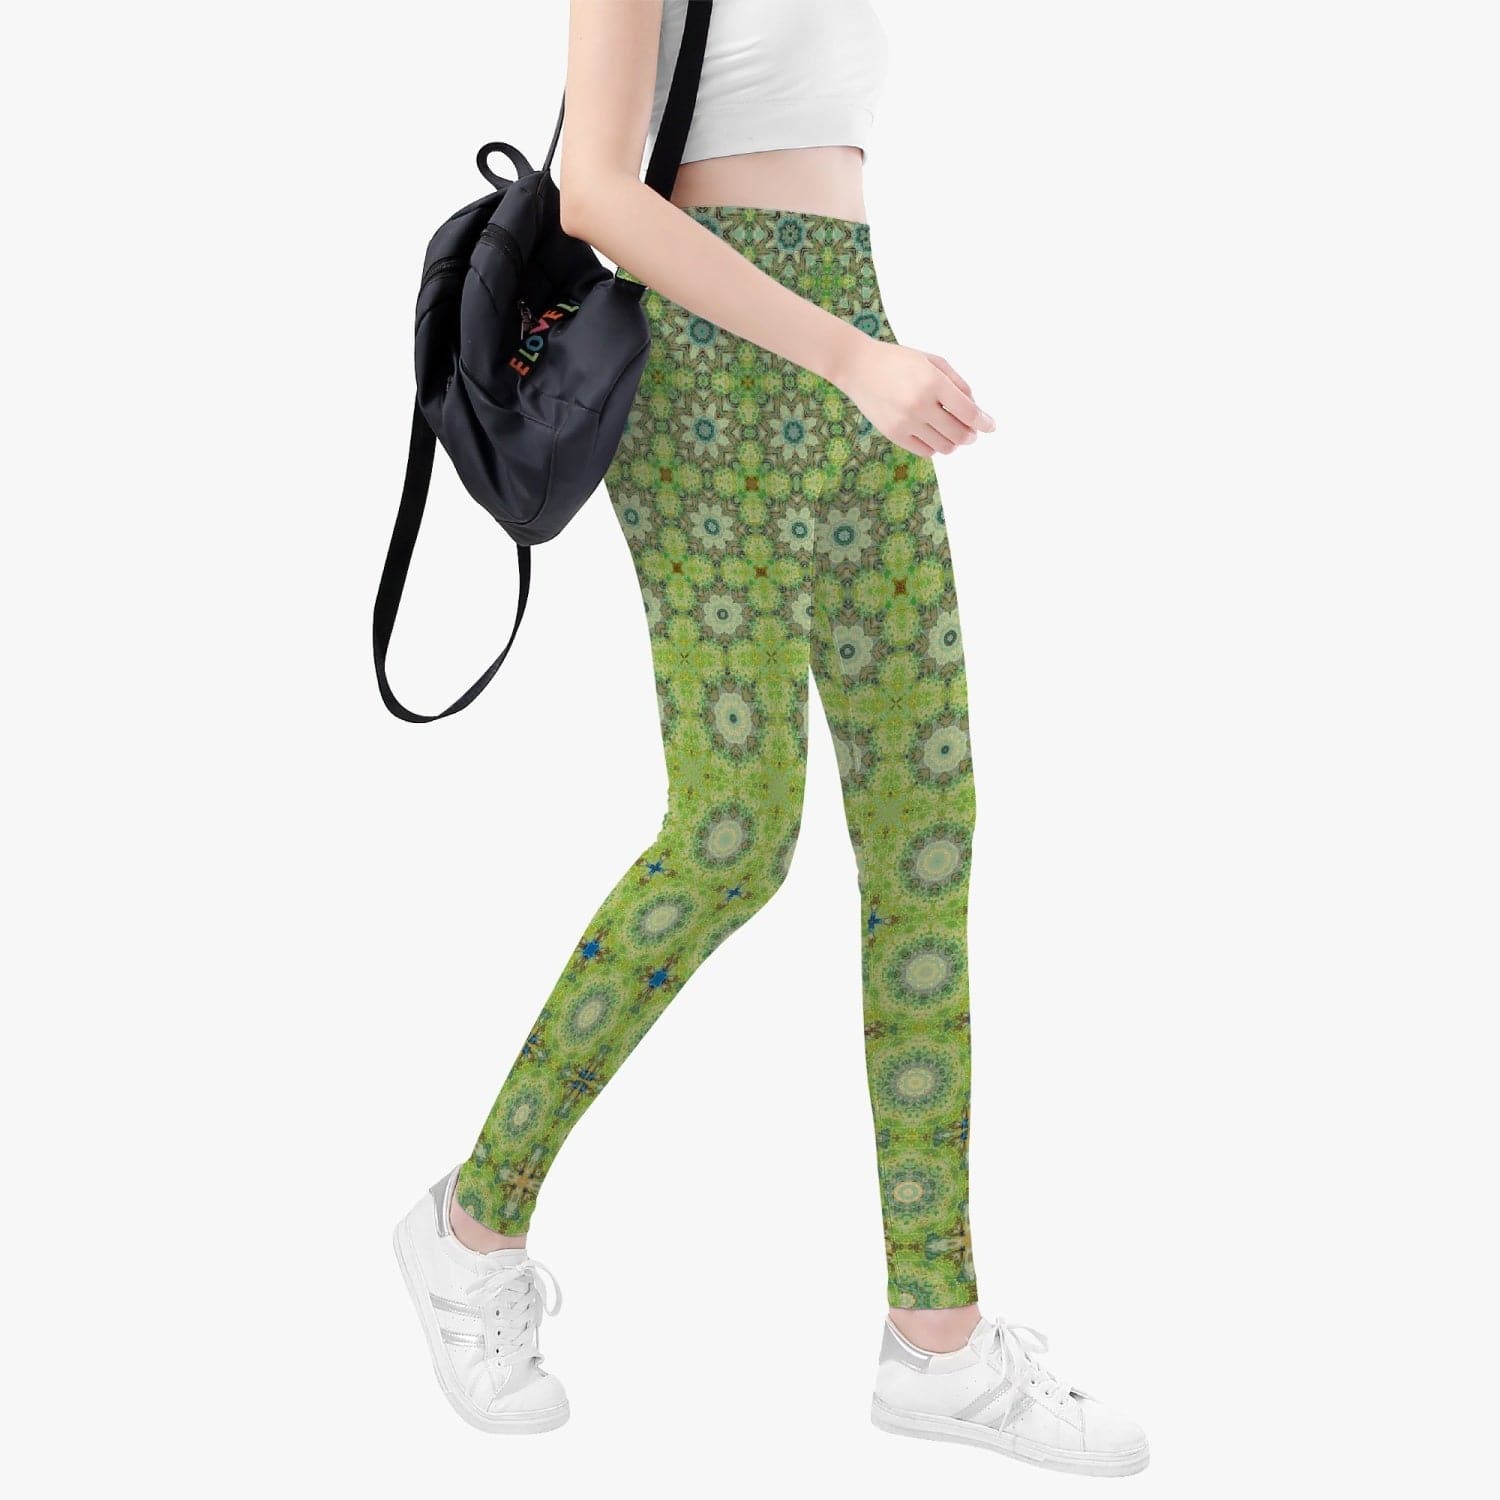 Spring green trendy 2022 Yoga Pants/Leggings, by Sensus Studio Design